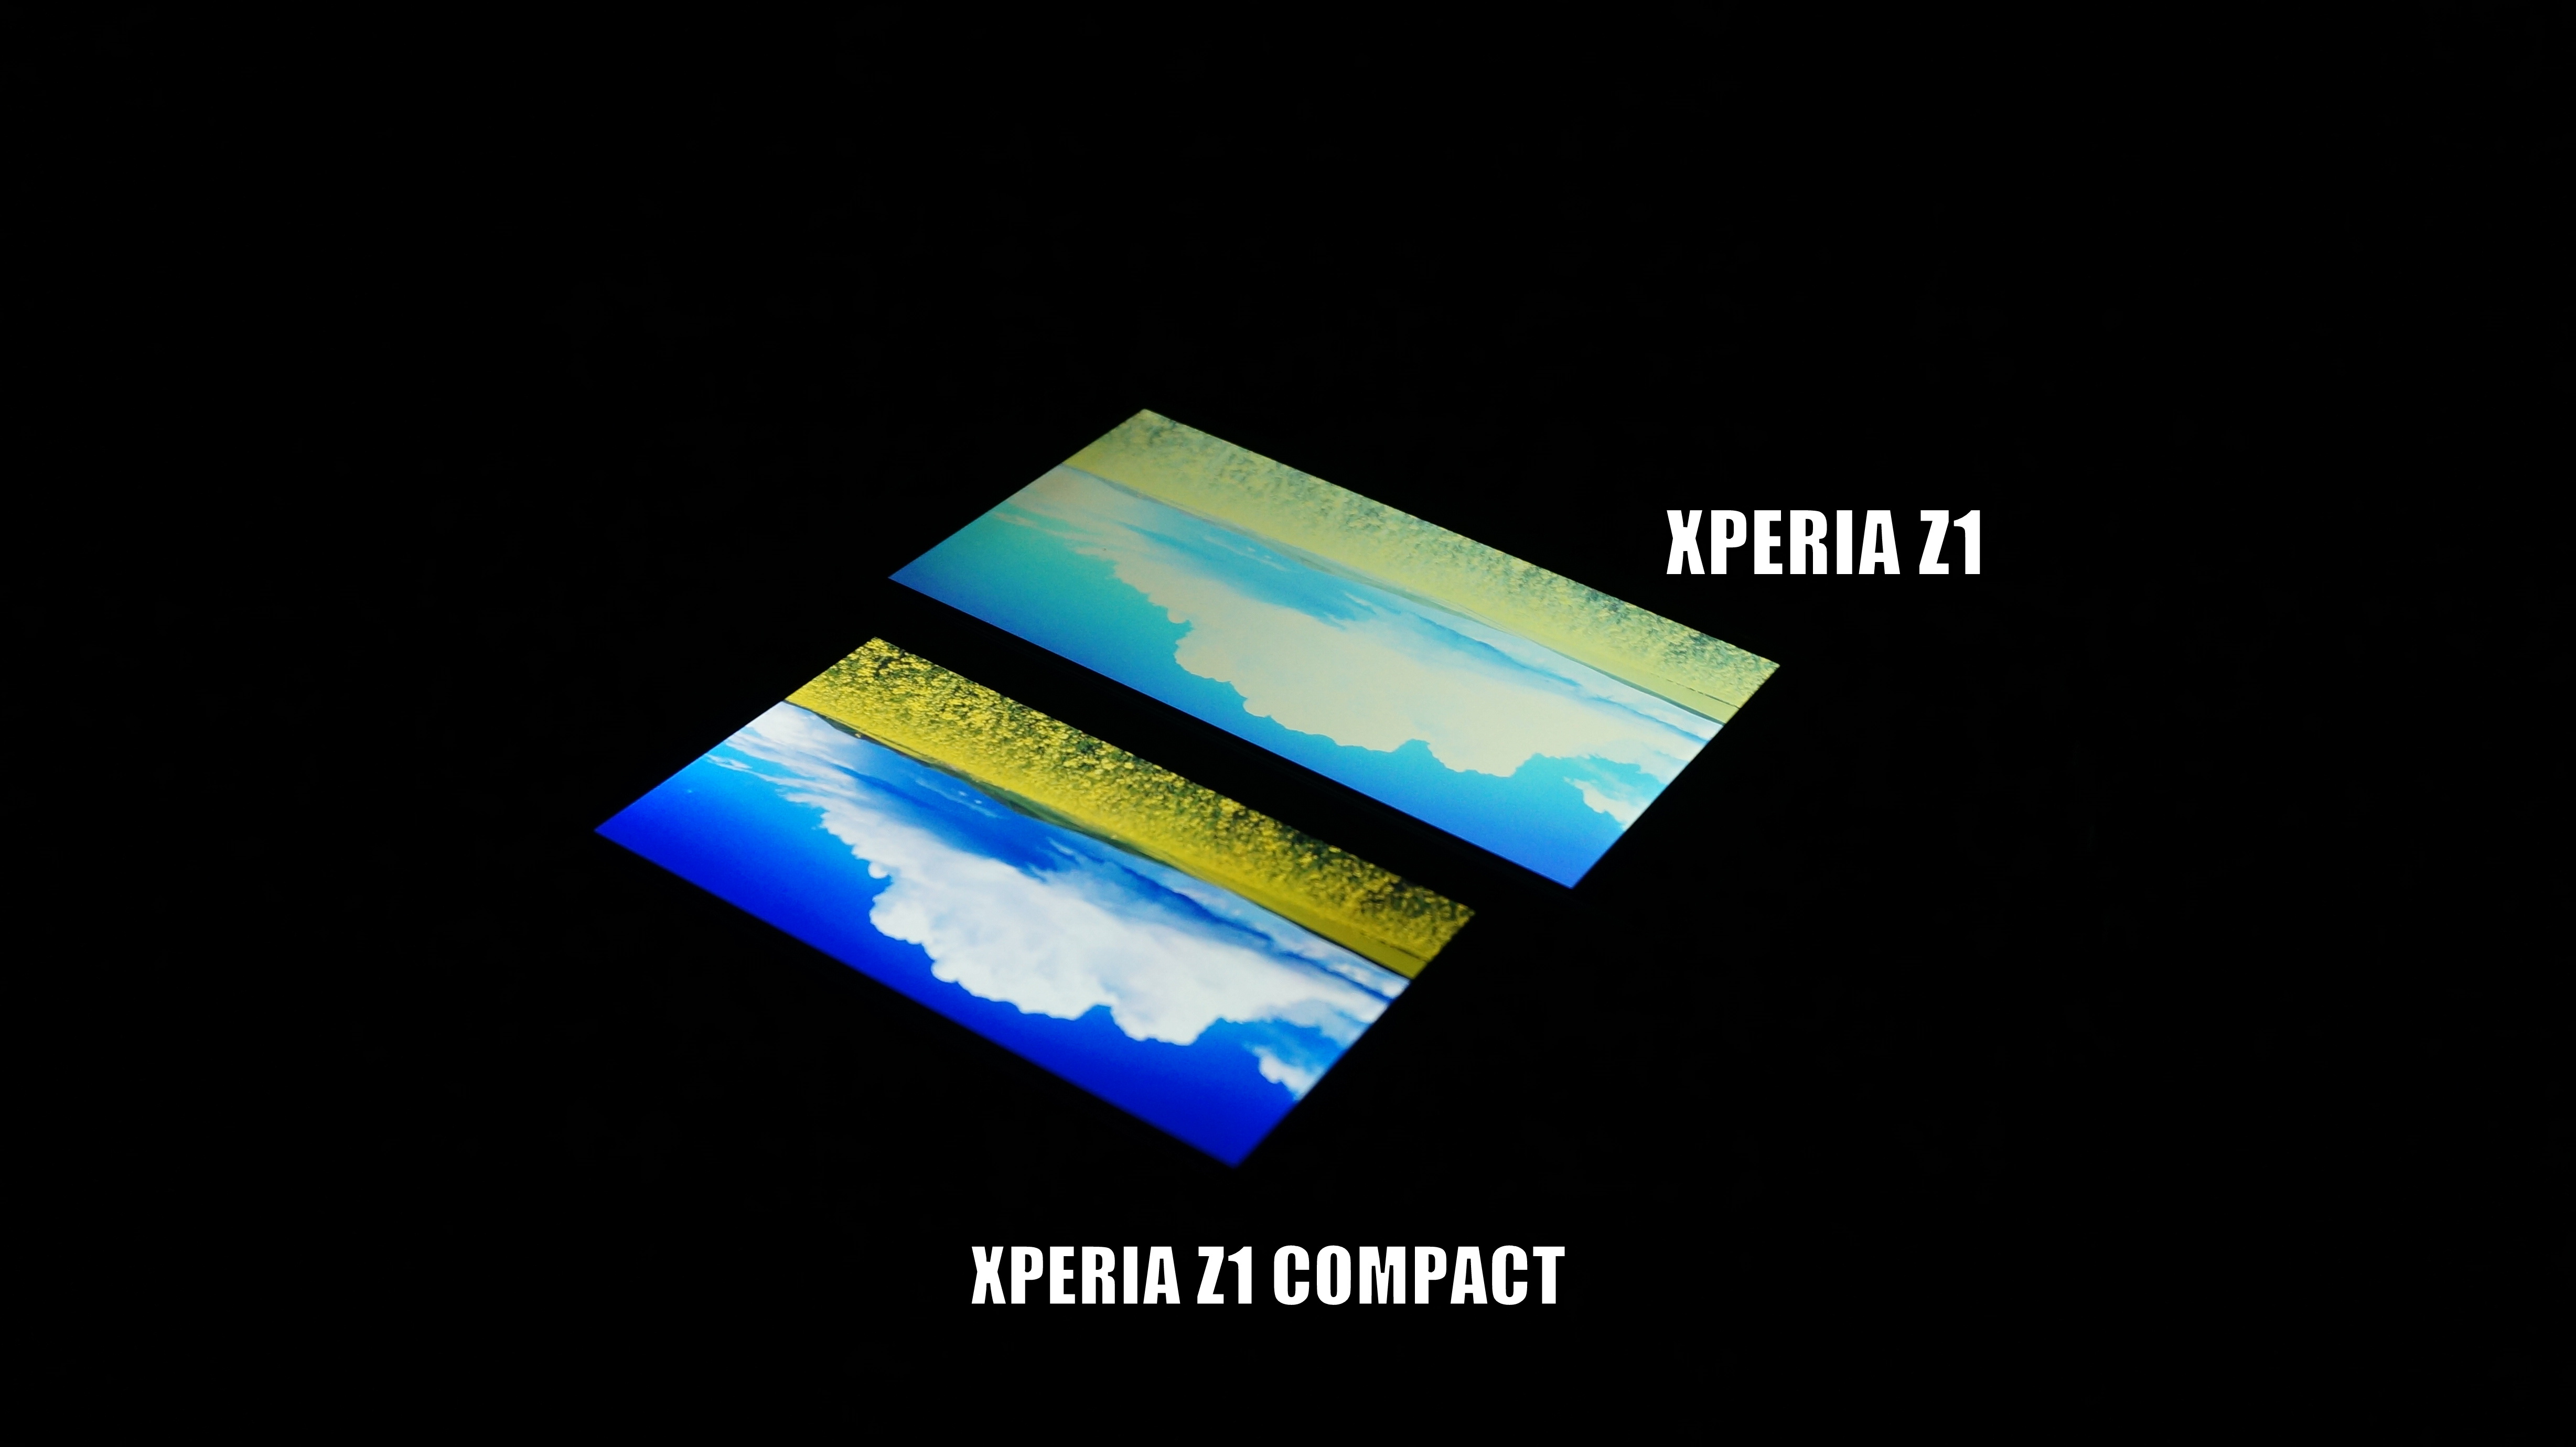 Xperia Z1 vs Xperia Z1 Compact Display Screen Comparison